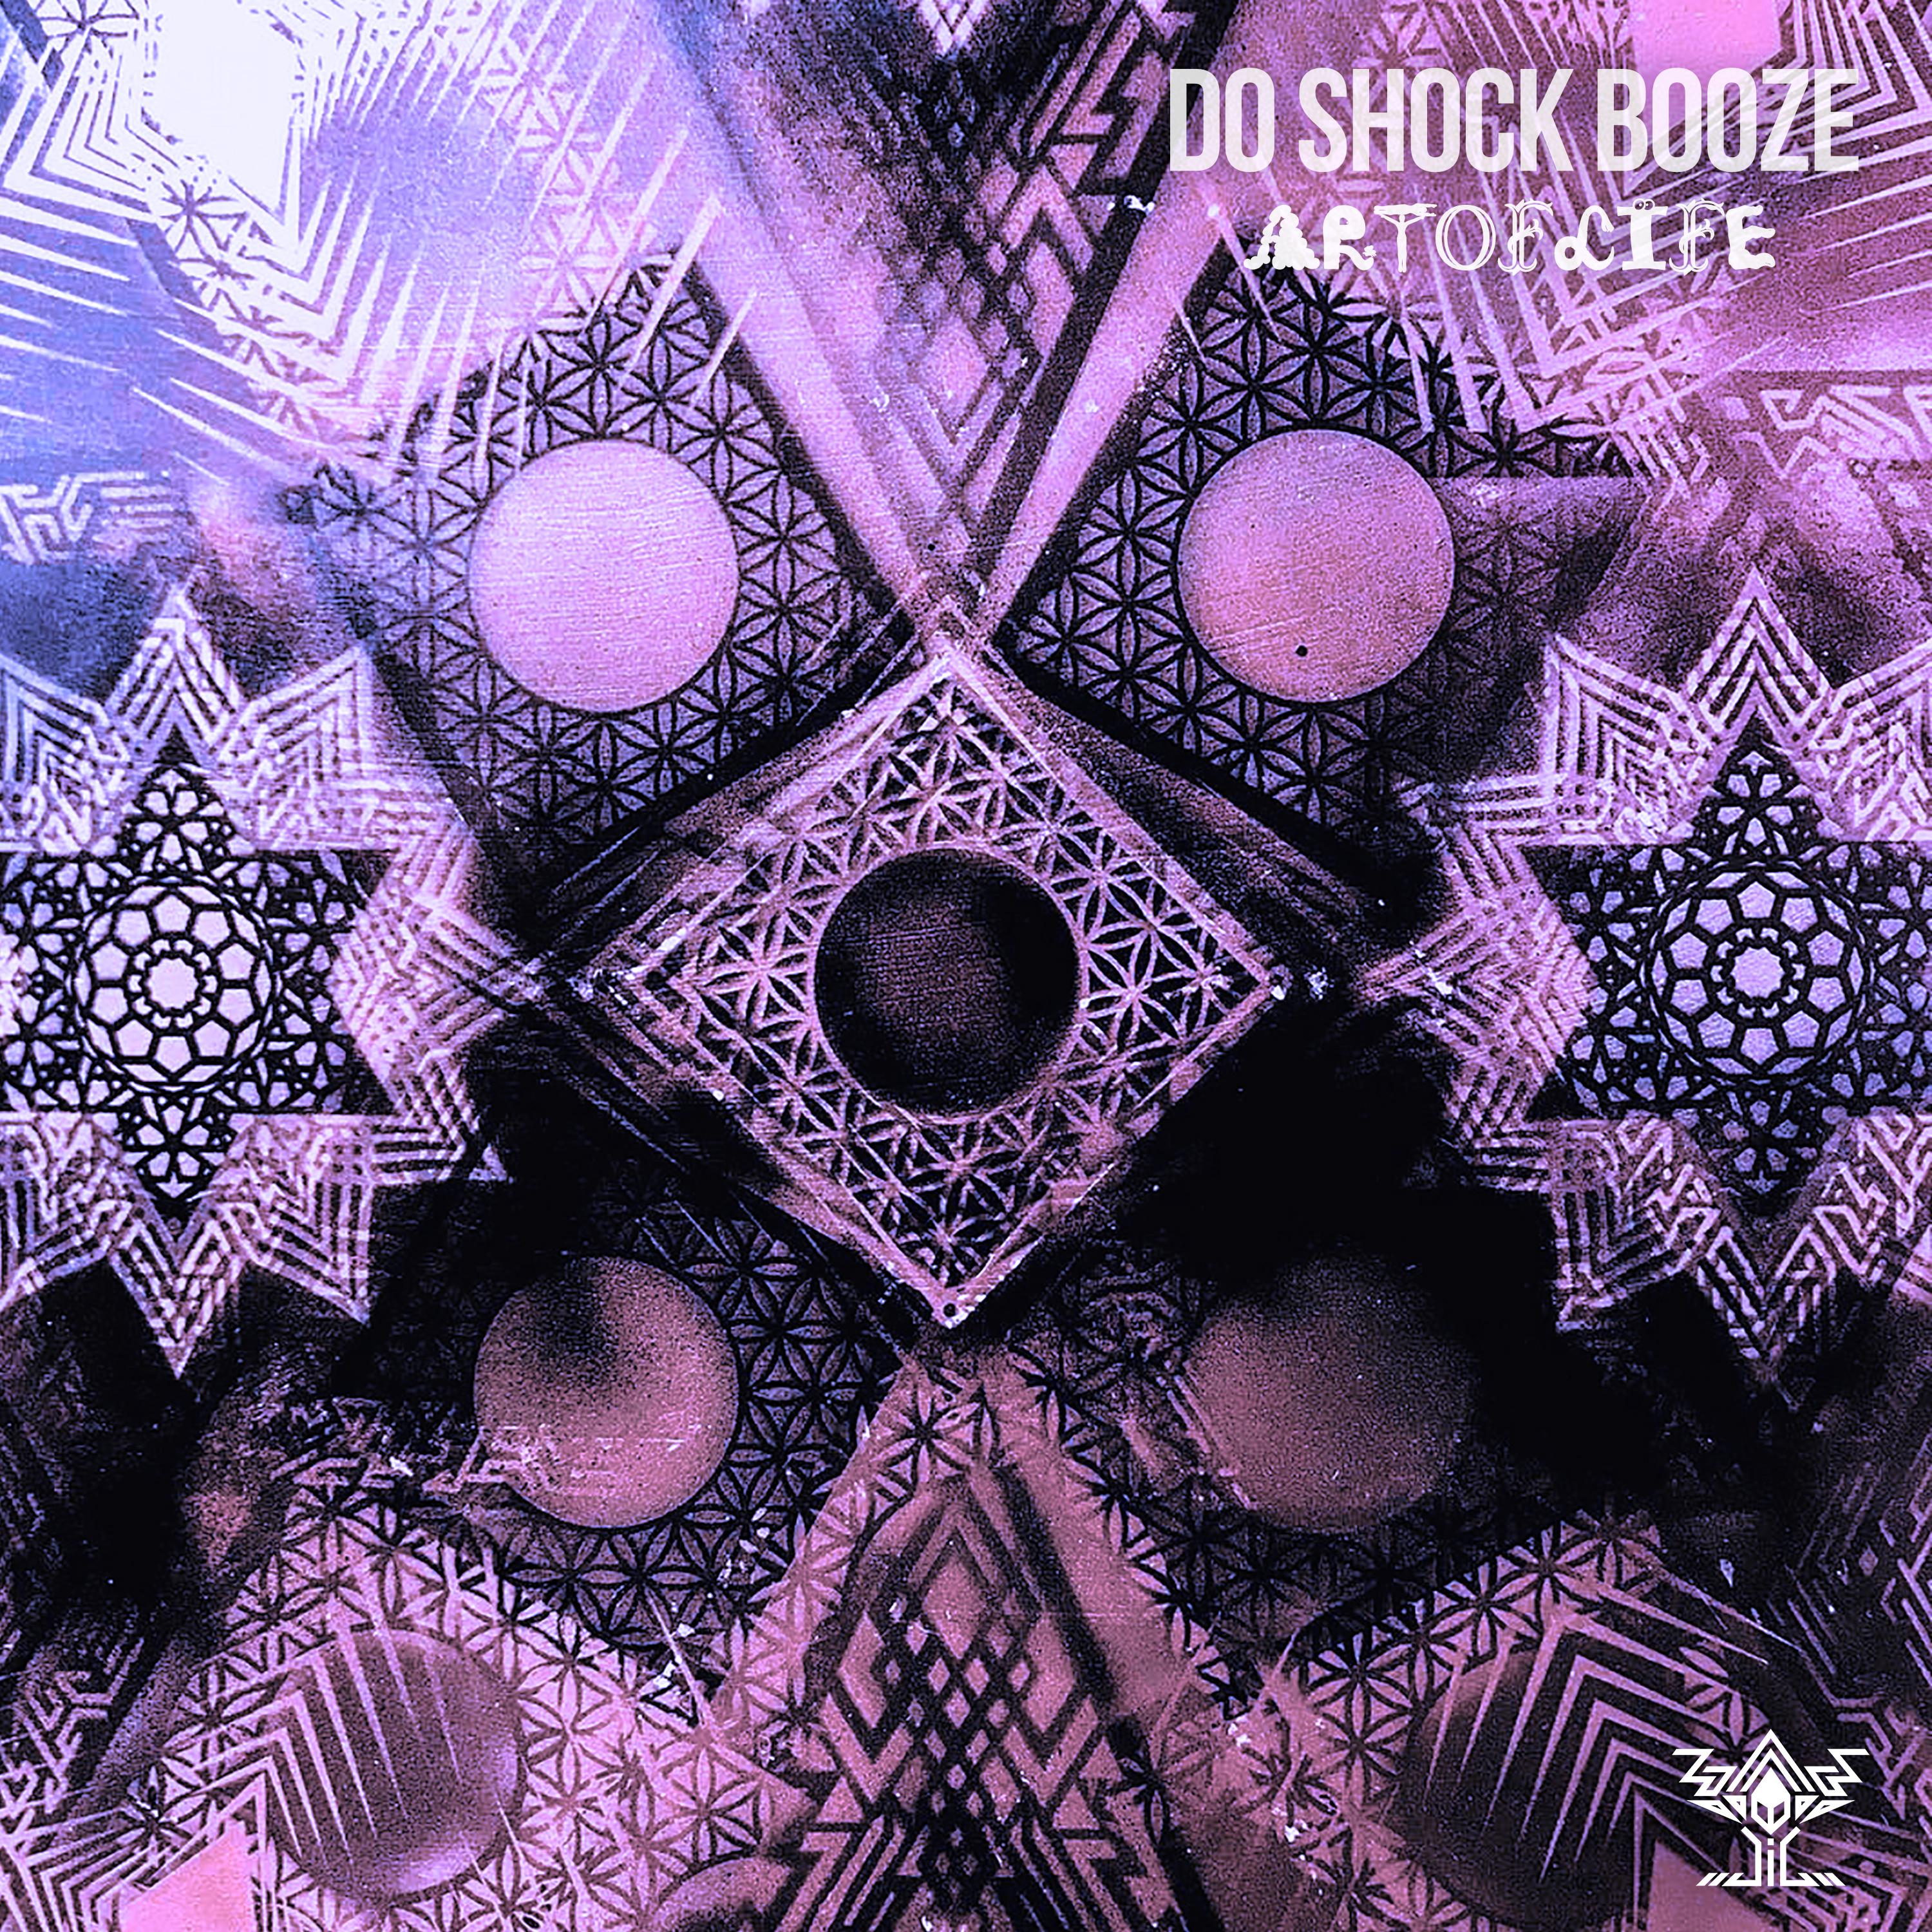 Do Shock Booze - Koyaniskatchy (Live Version)